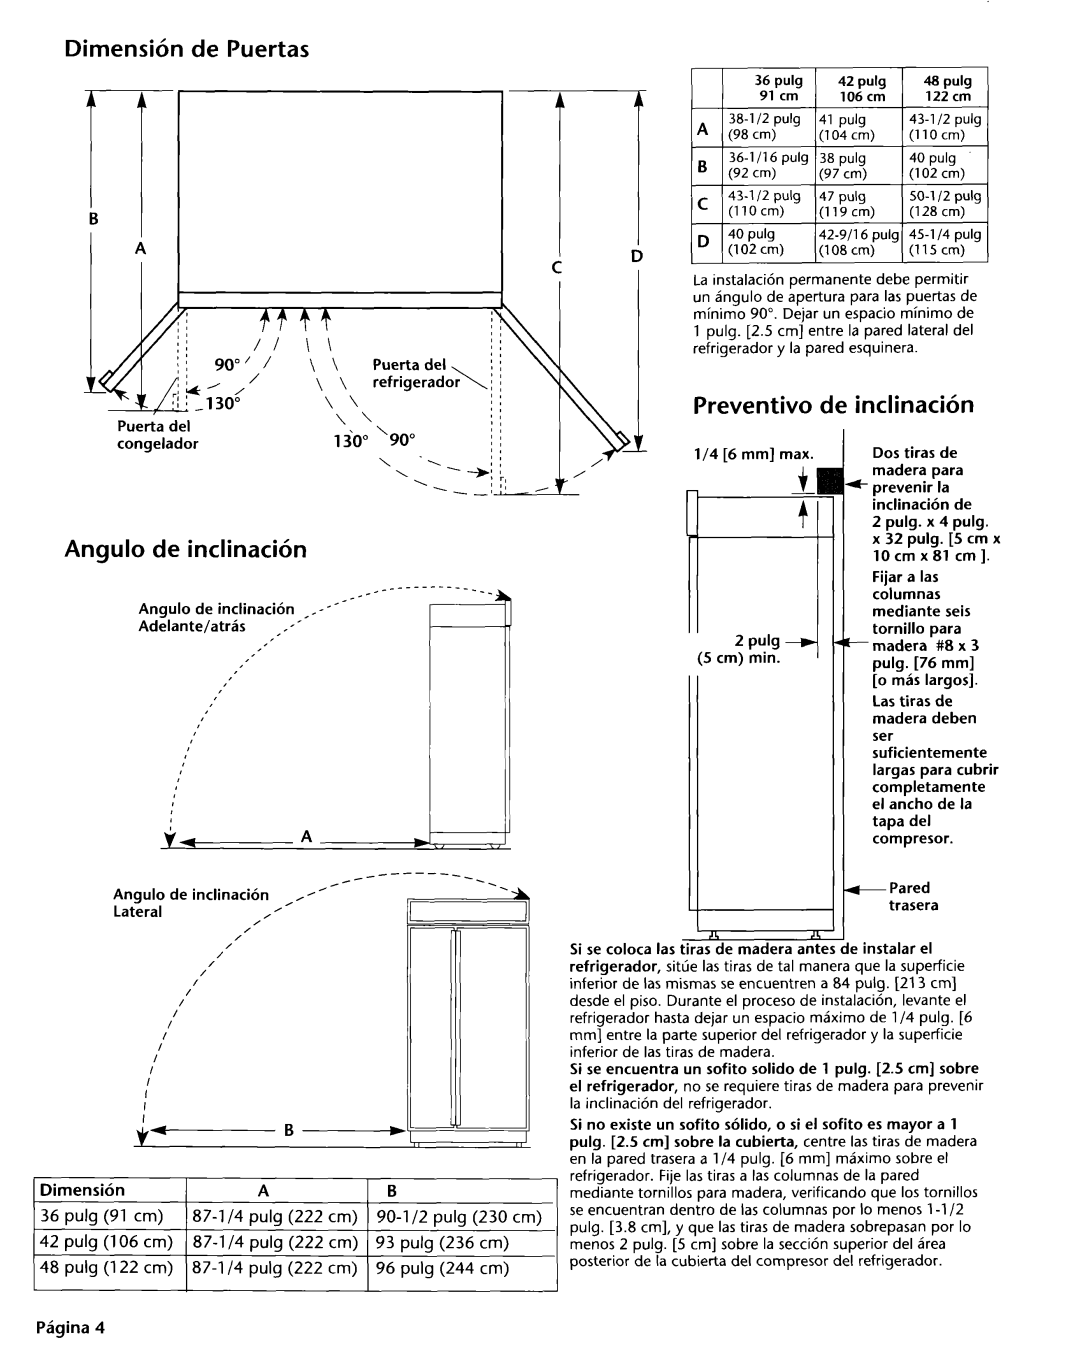 KitchenAid 2004022 installation instructions Dimensih de Puertas, Angulo de inclinacih, Preventivo de inclinacih 